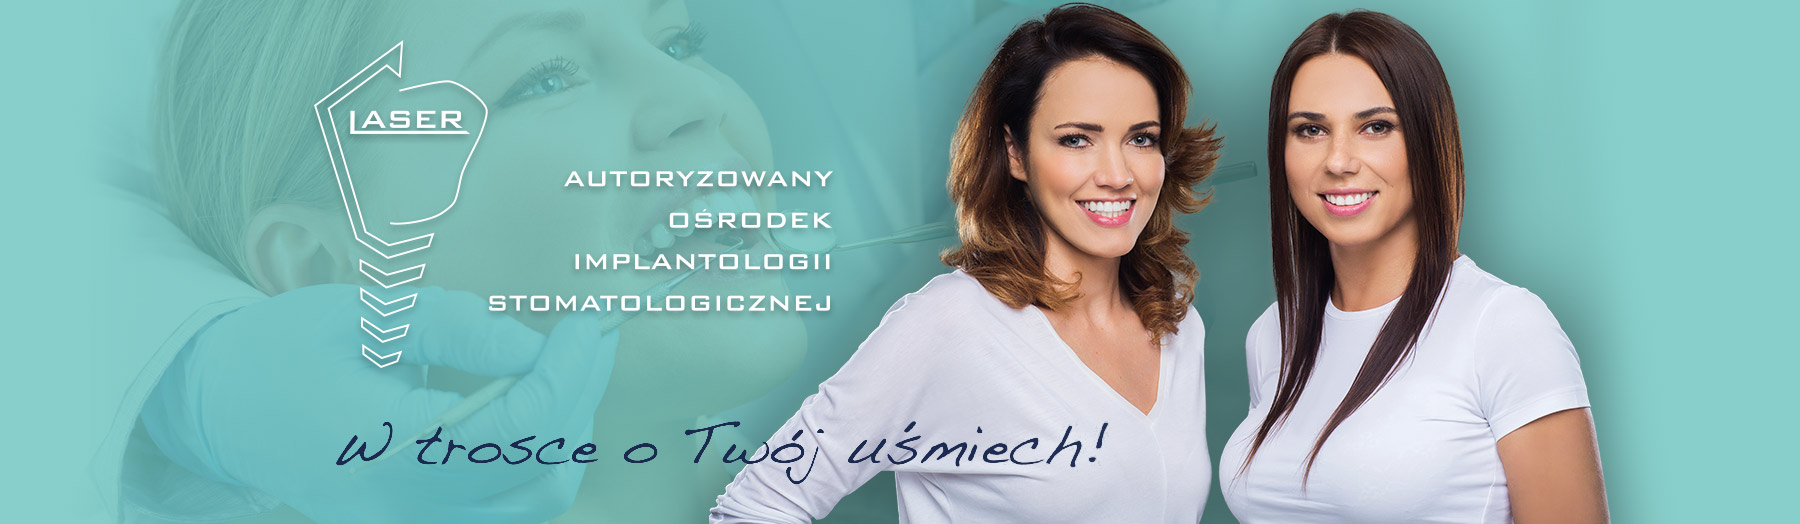 Dentysta Szczecin - NZOZ Laser